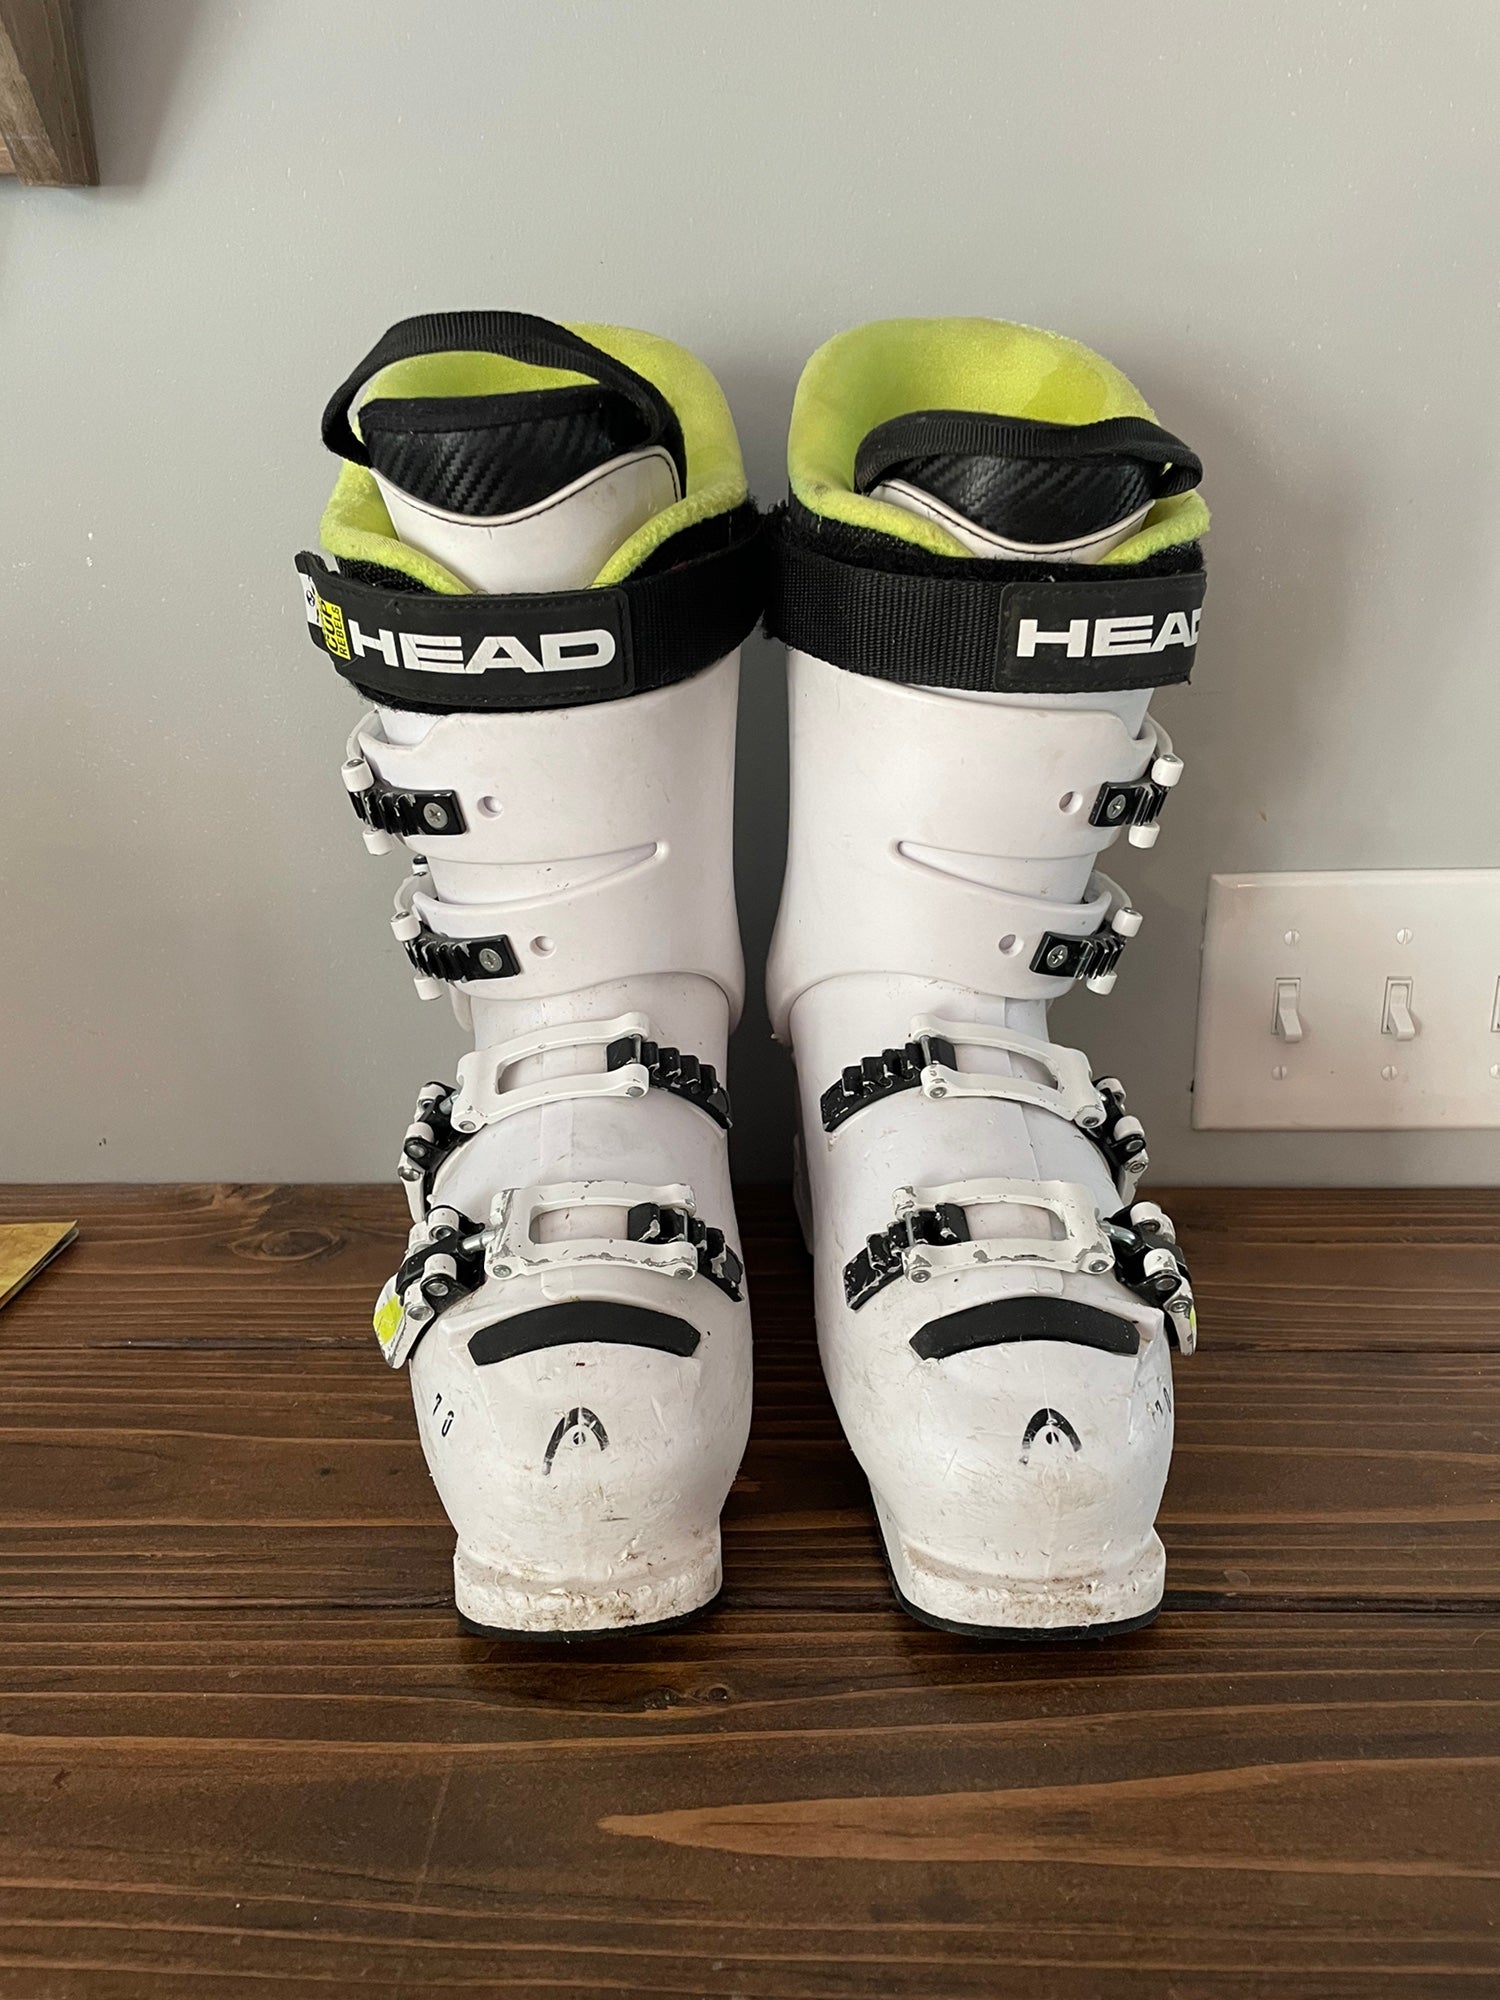 Head Girl's ski  Boots Z1  white/pink Downhill alpine ski Boots pair New 